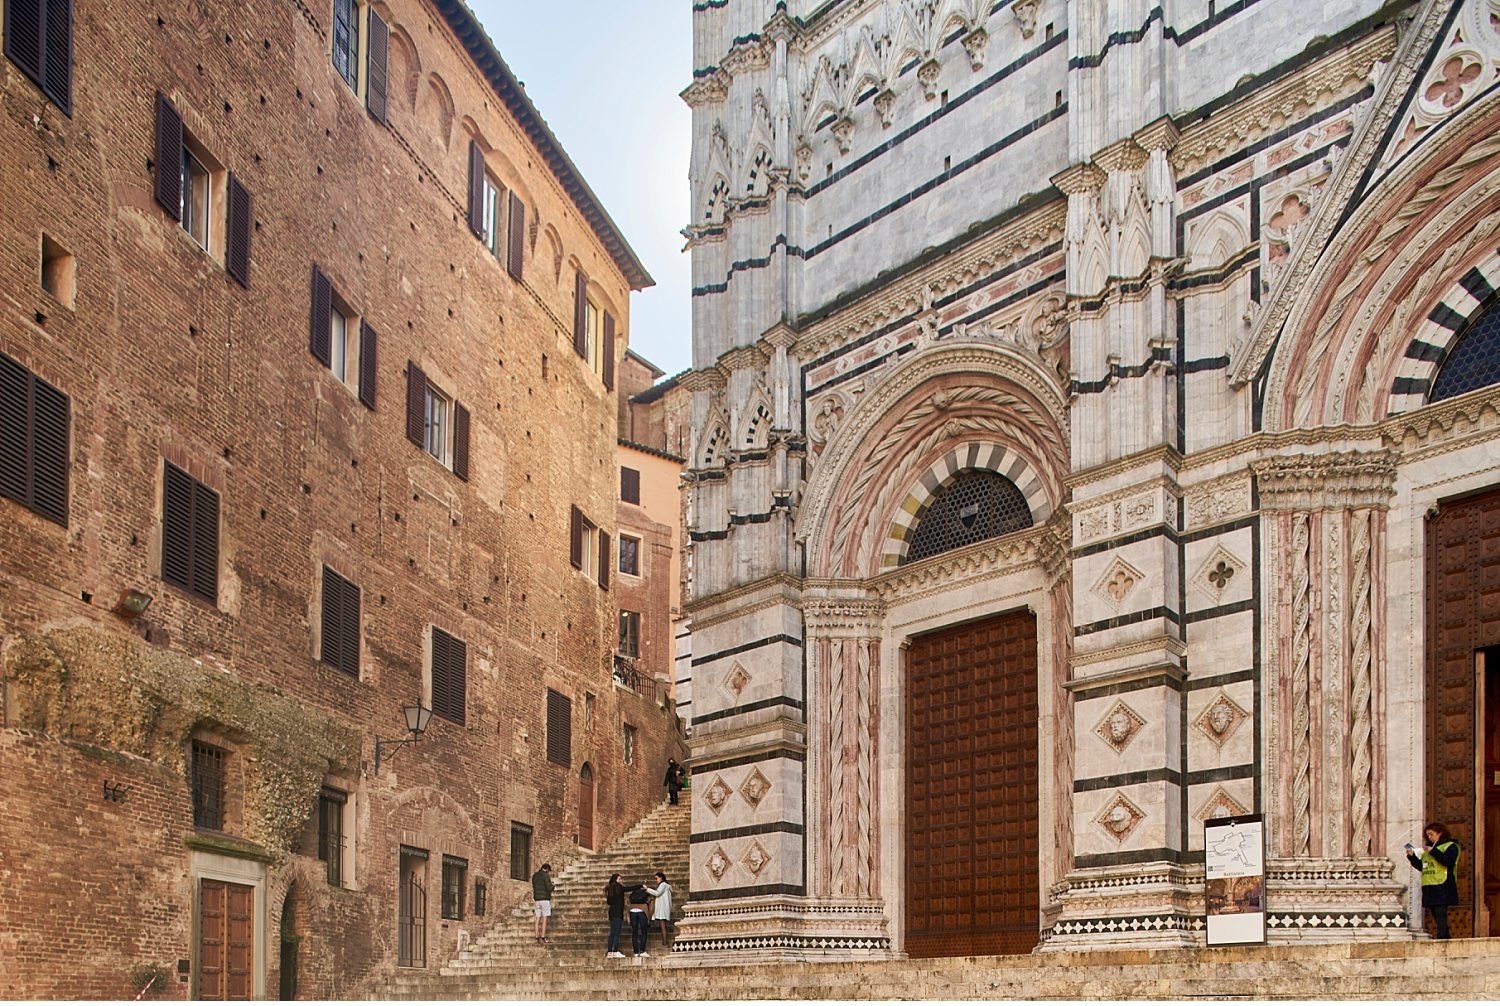  Il B&B "Il Cuore di Siena" si trova nel cuore del centro storico di Siena, a pochi passi dalle principali attrazioni turistiche come il Duomo, Piazza del Campo e il Palazzo Comunale. Le camere del B&B sono arredate in stile tradizionale toscano e di